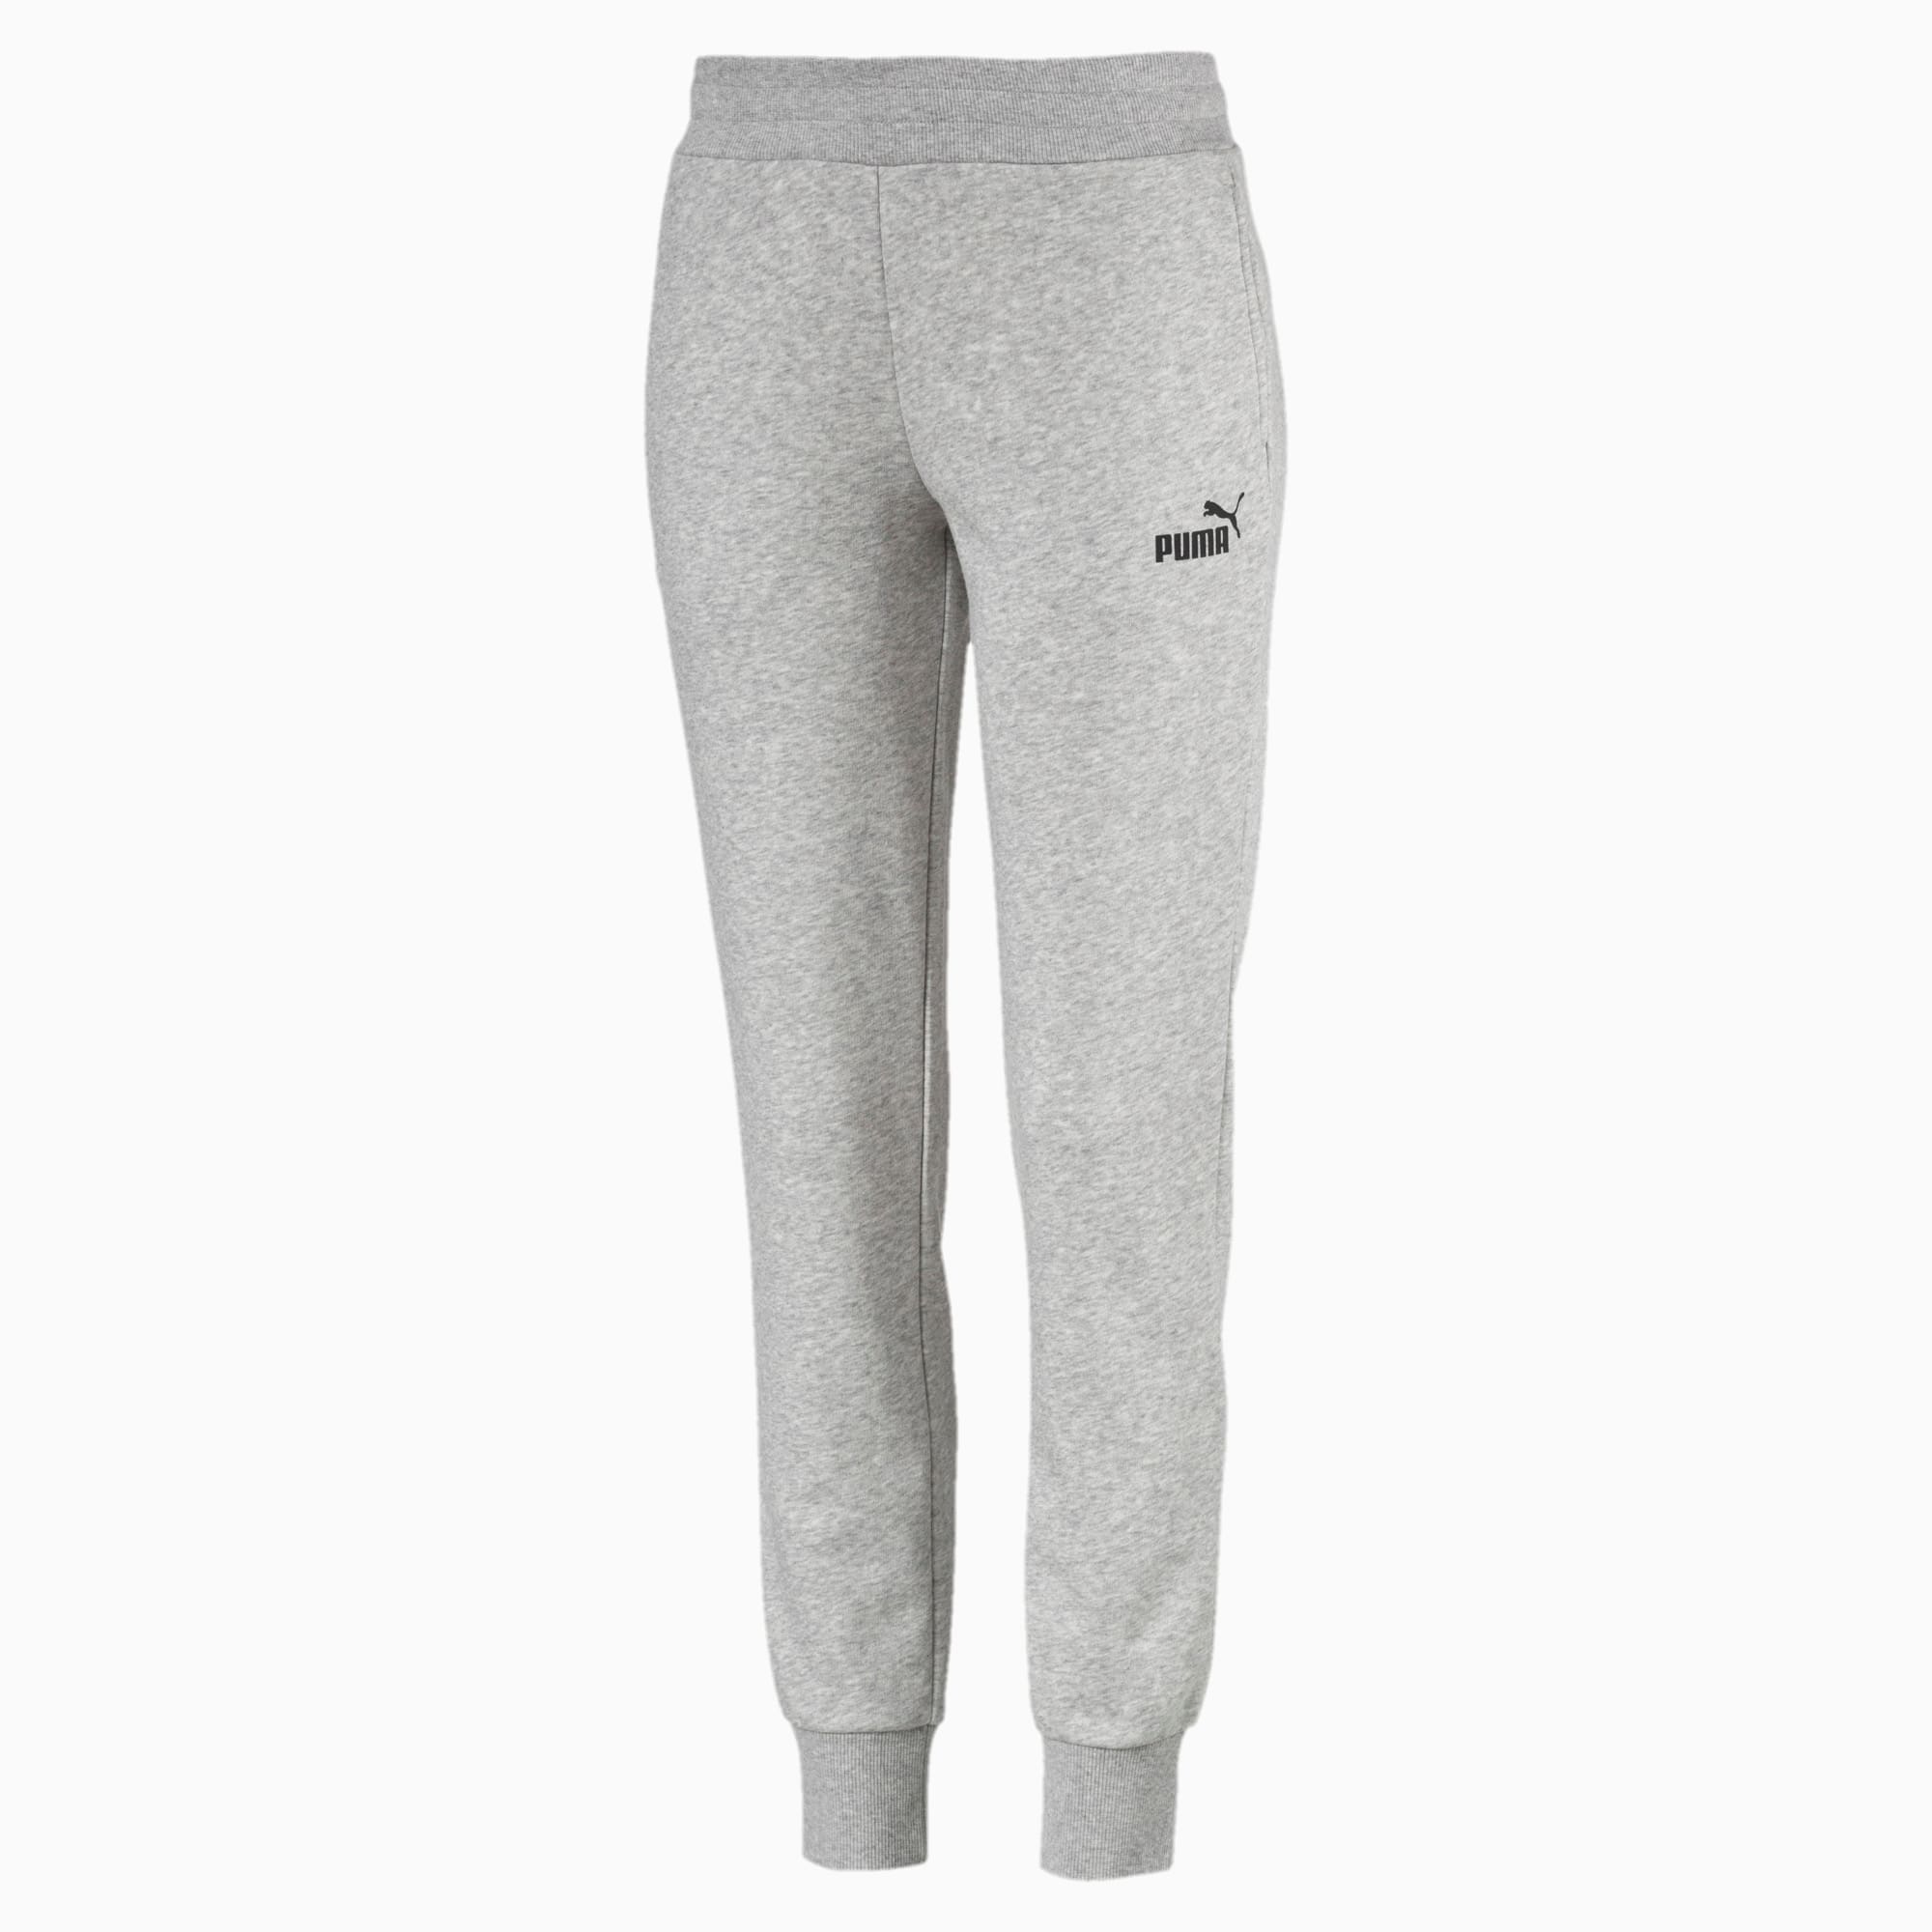 puma sweatpants grey